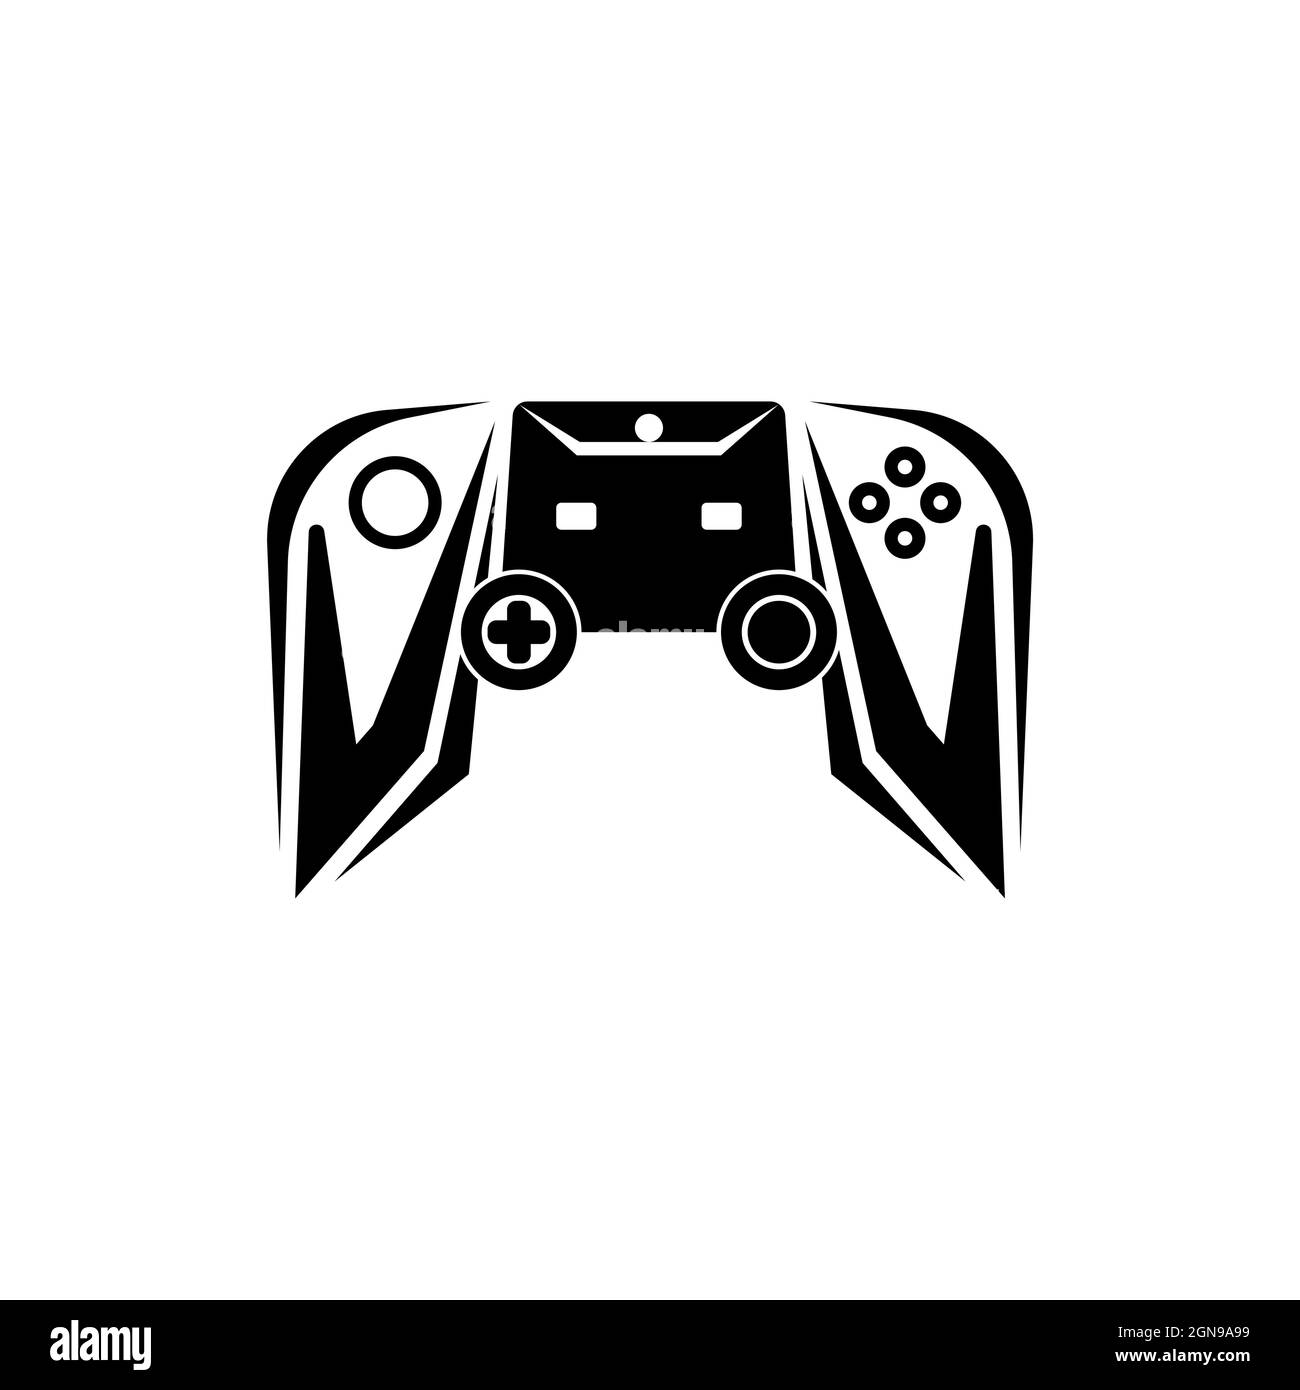 Top 10 Gaming Logos: Video Game Logo Inspiration